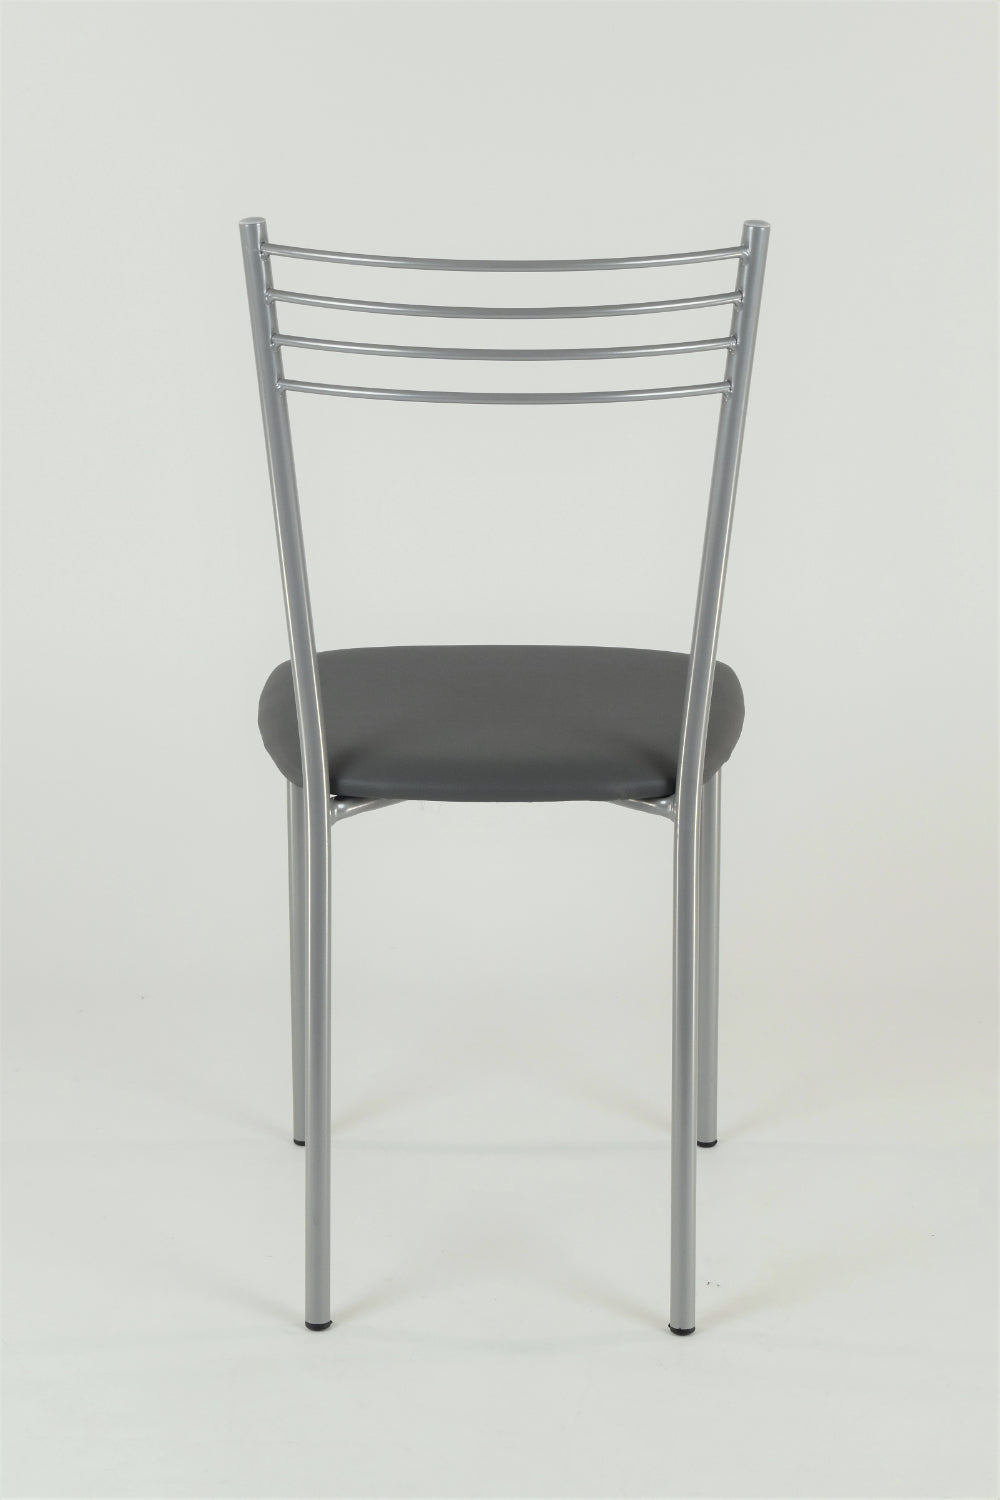 Tommychairs - Set 4 sillas de Cocina y Restaurante Elena, Estructura en Acero Pintado Aluminio, Asiento en Polipiel Color Gris Oscuro